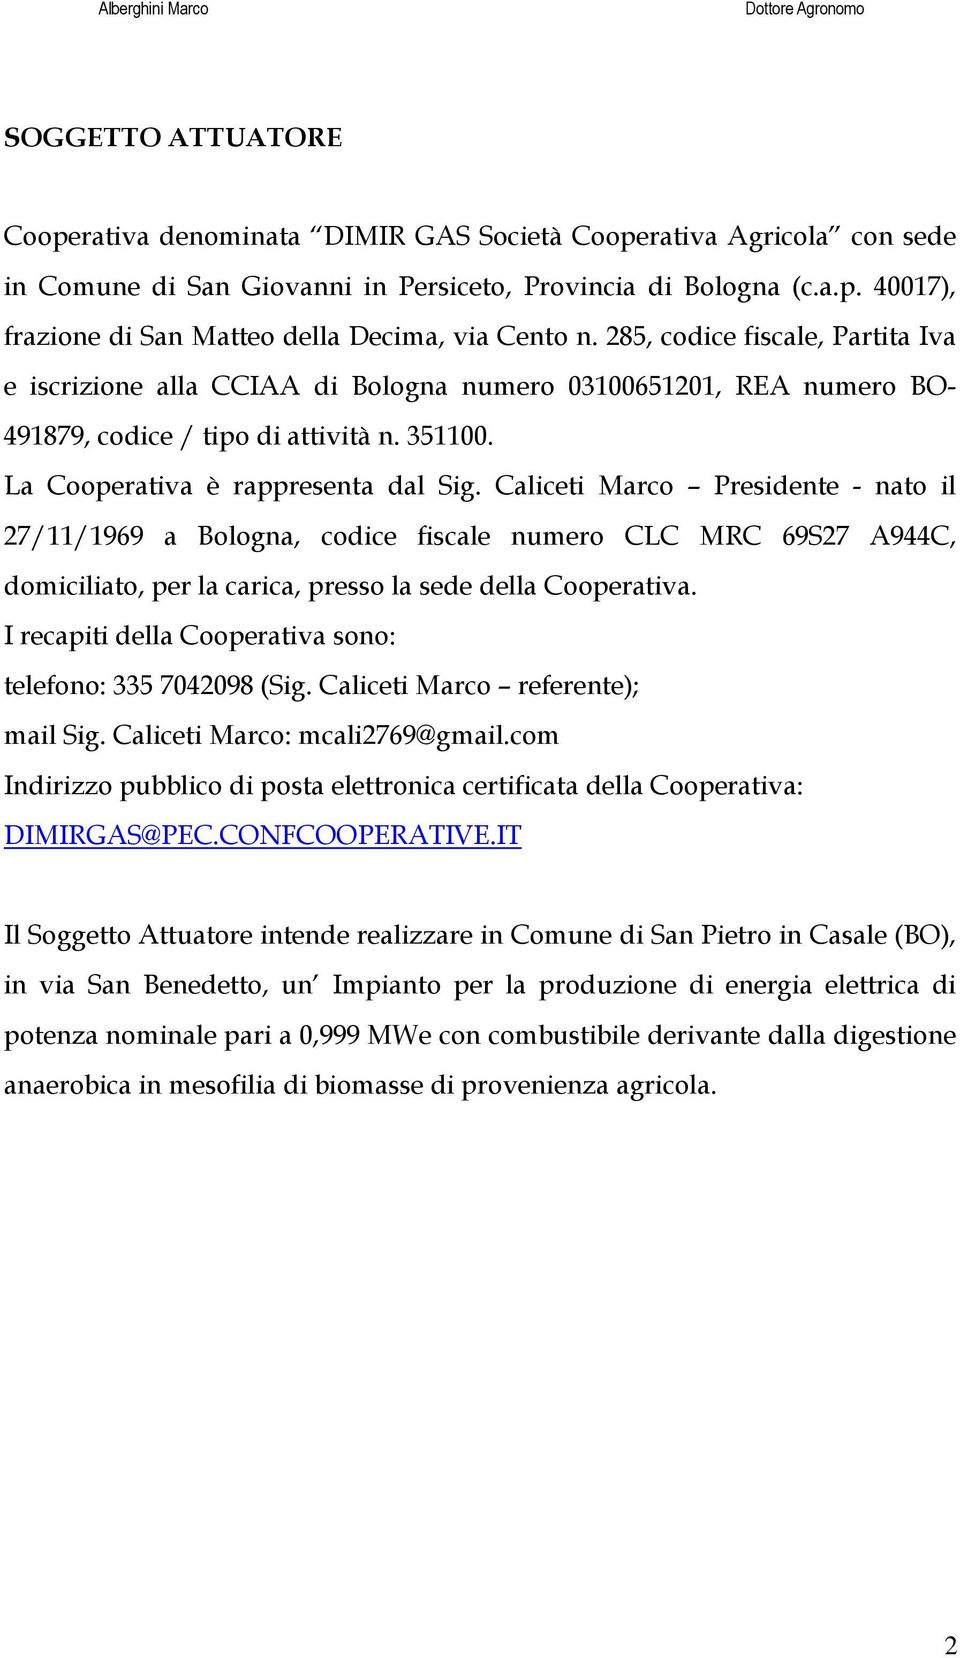 Caliceti Marco Presidente - nato il 27/11/1969 a Bologna, codice fiscale numero CLC MRC 69S27 A944C, domiciliato, per la carica, presso la sede della Cooperativa.